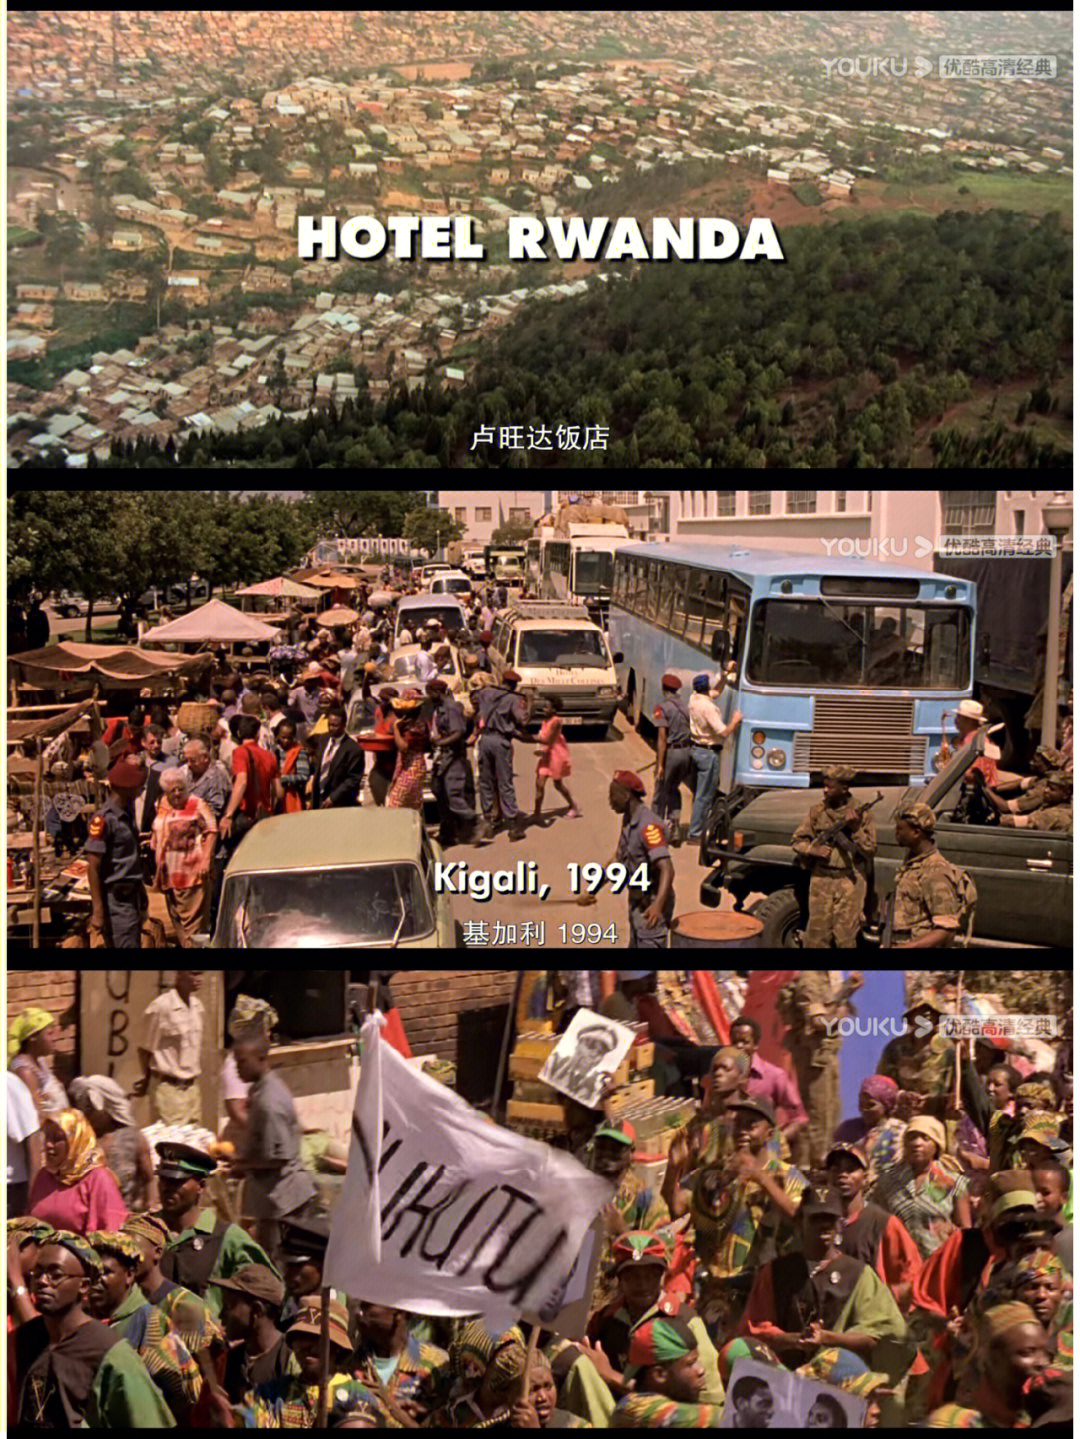 97电影:《卢旺达饭店》97时长:2小时01分97豆瓣评分:8